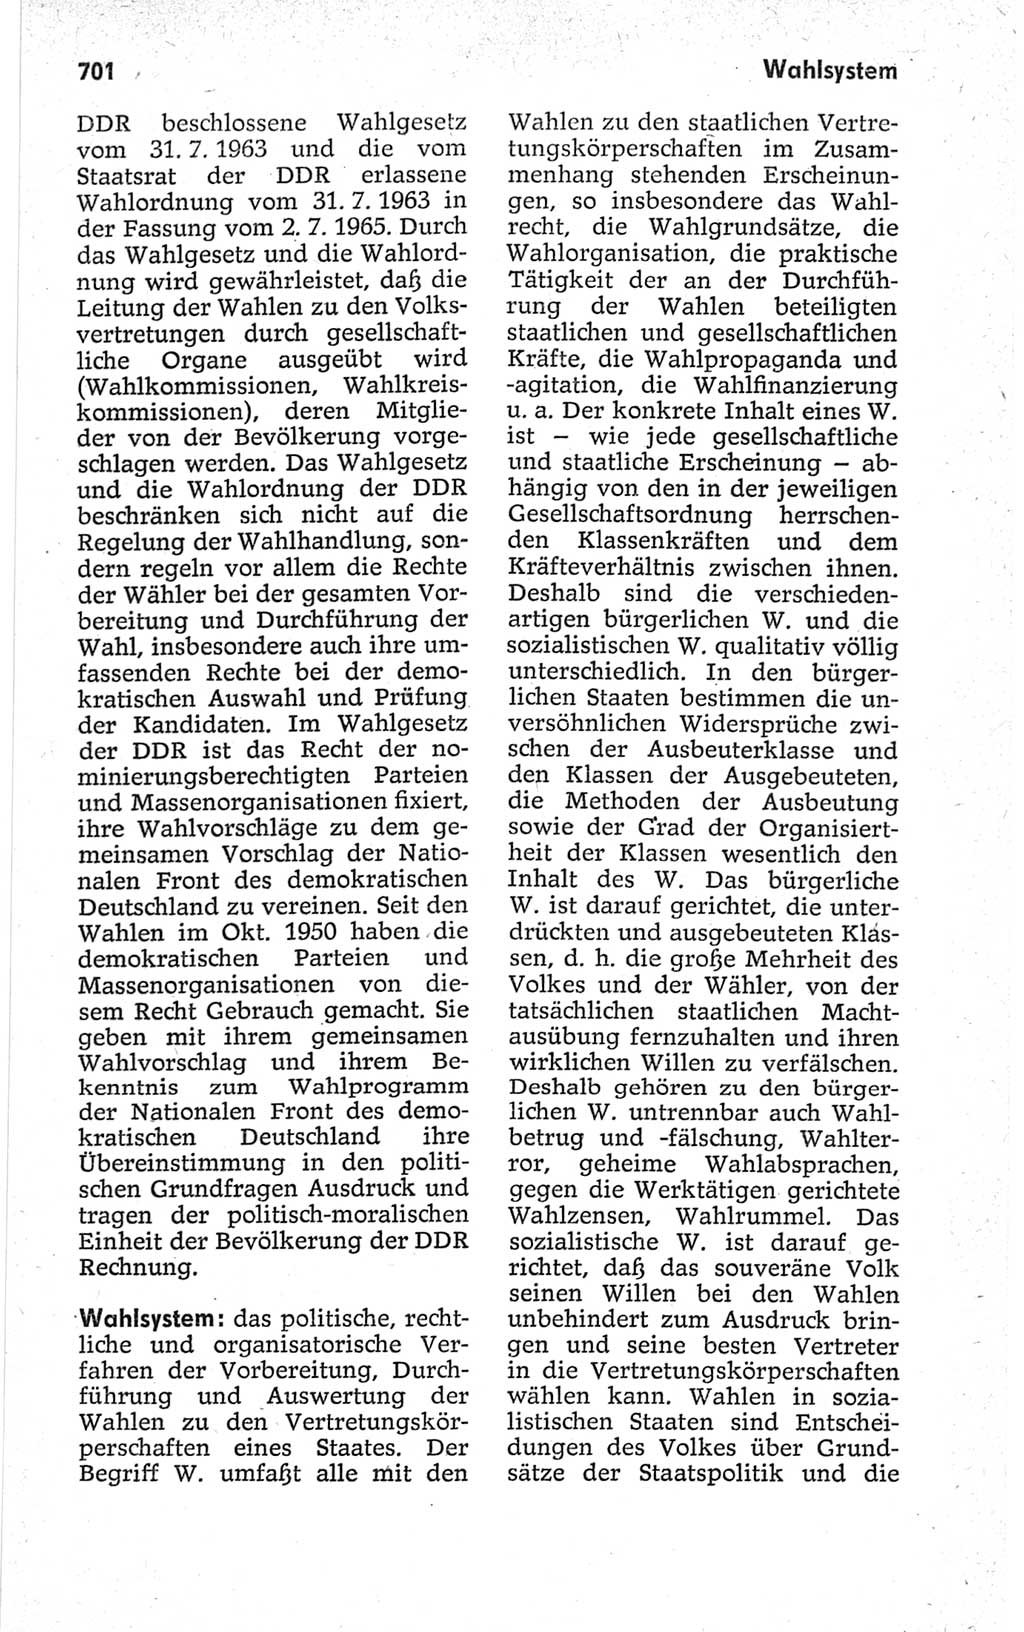 Kleines politisches Wörterbuch [Deutsche Demokratische Republik (DDR)] 1967, Seite 701 (Kl. pol. Wb. DDR 1967, S. 701)